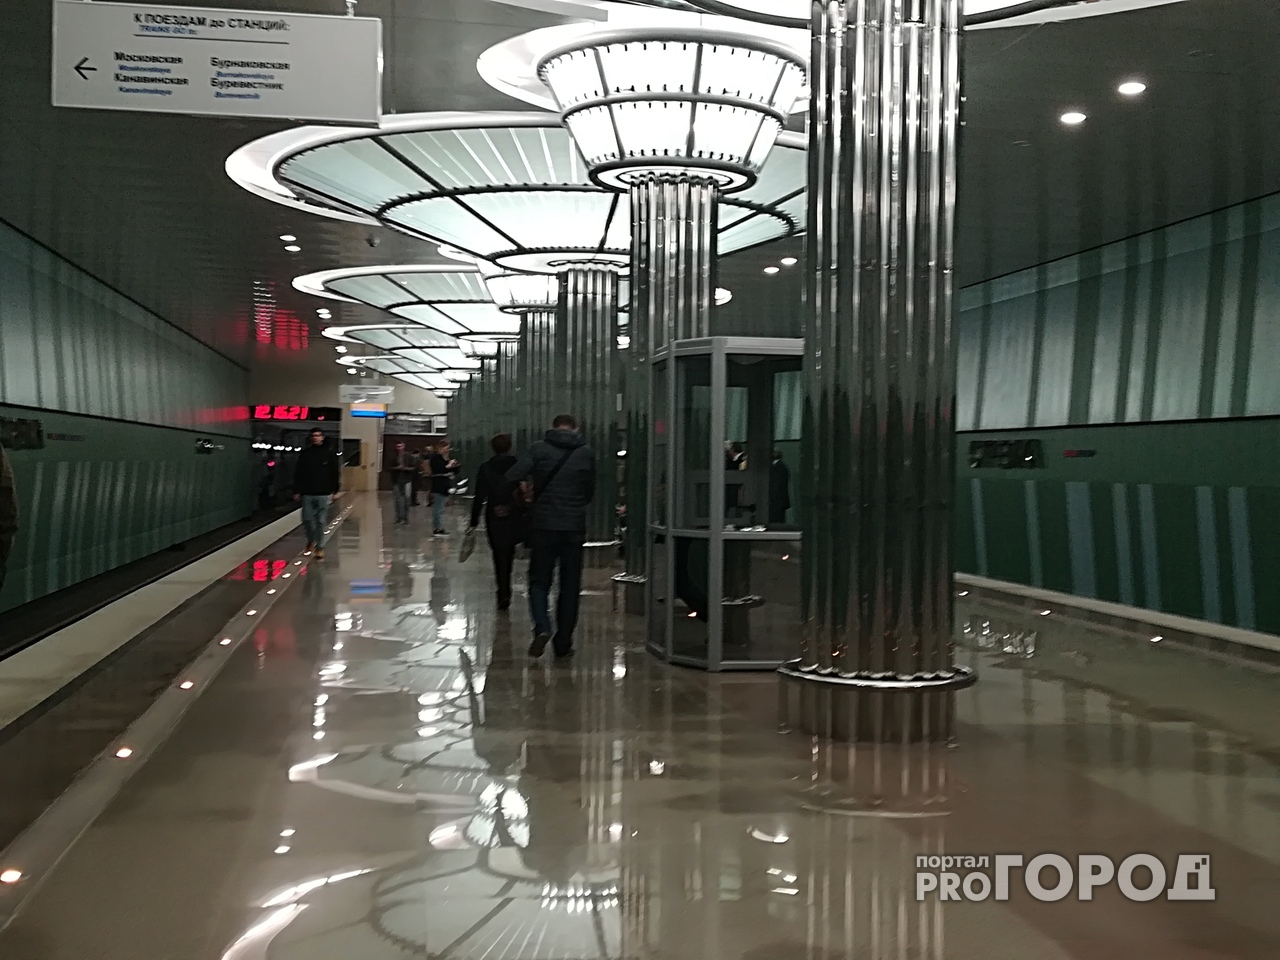 Станция метро "Стрелка" открыта в Нижнем Новгороде (фото, видео)